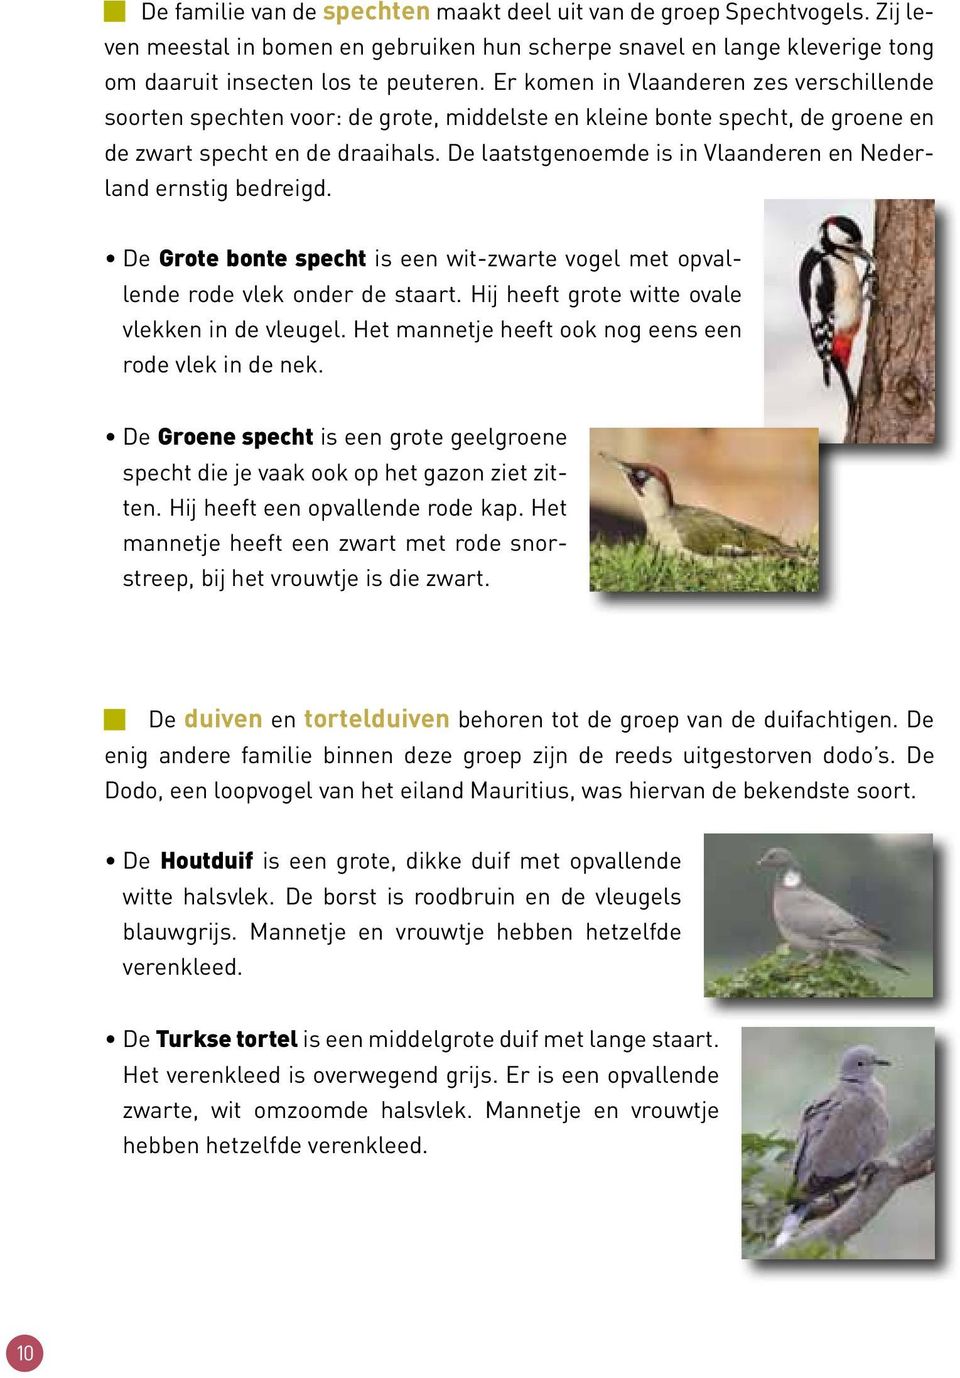 De laatstgenoemde is in Vlaanderen en Nederland ernstig bedreigd. De Grote bonte specht is een wit-zwarte vogel met opvallende rode vlek onder de staart.